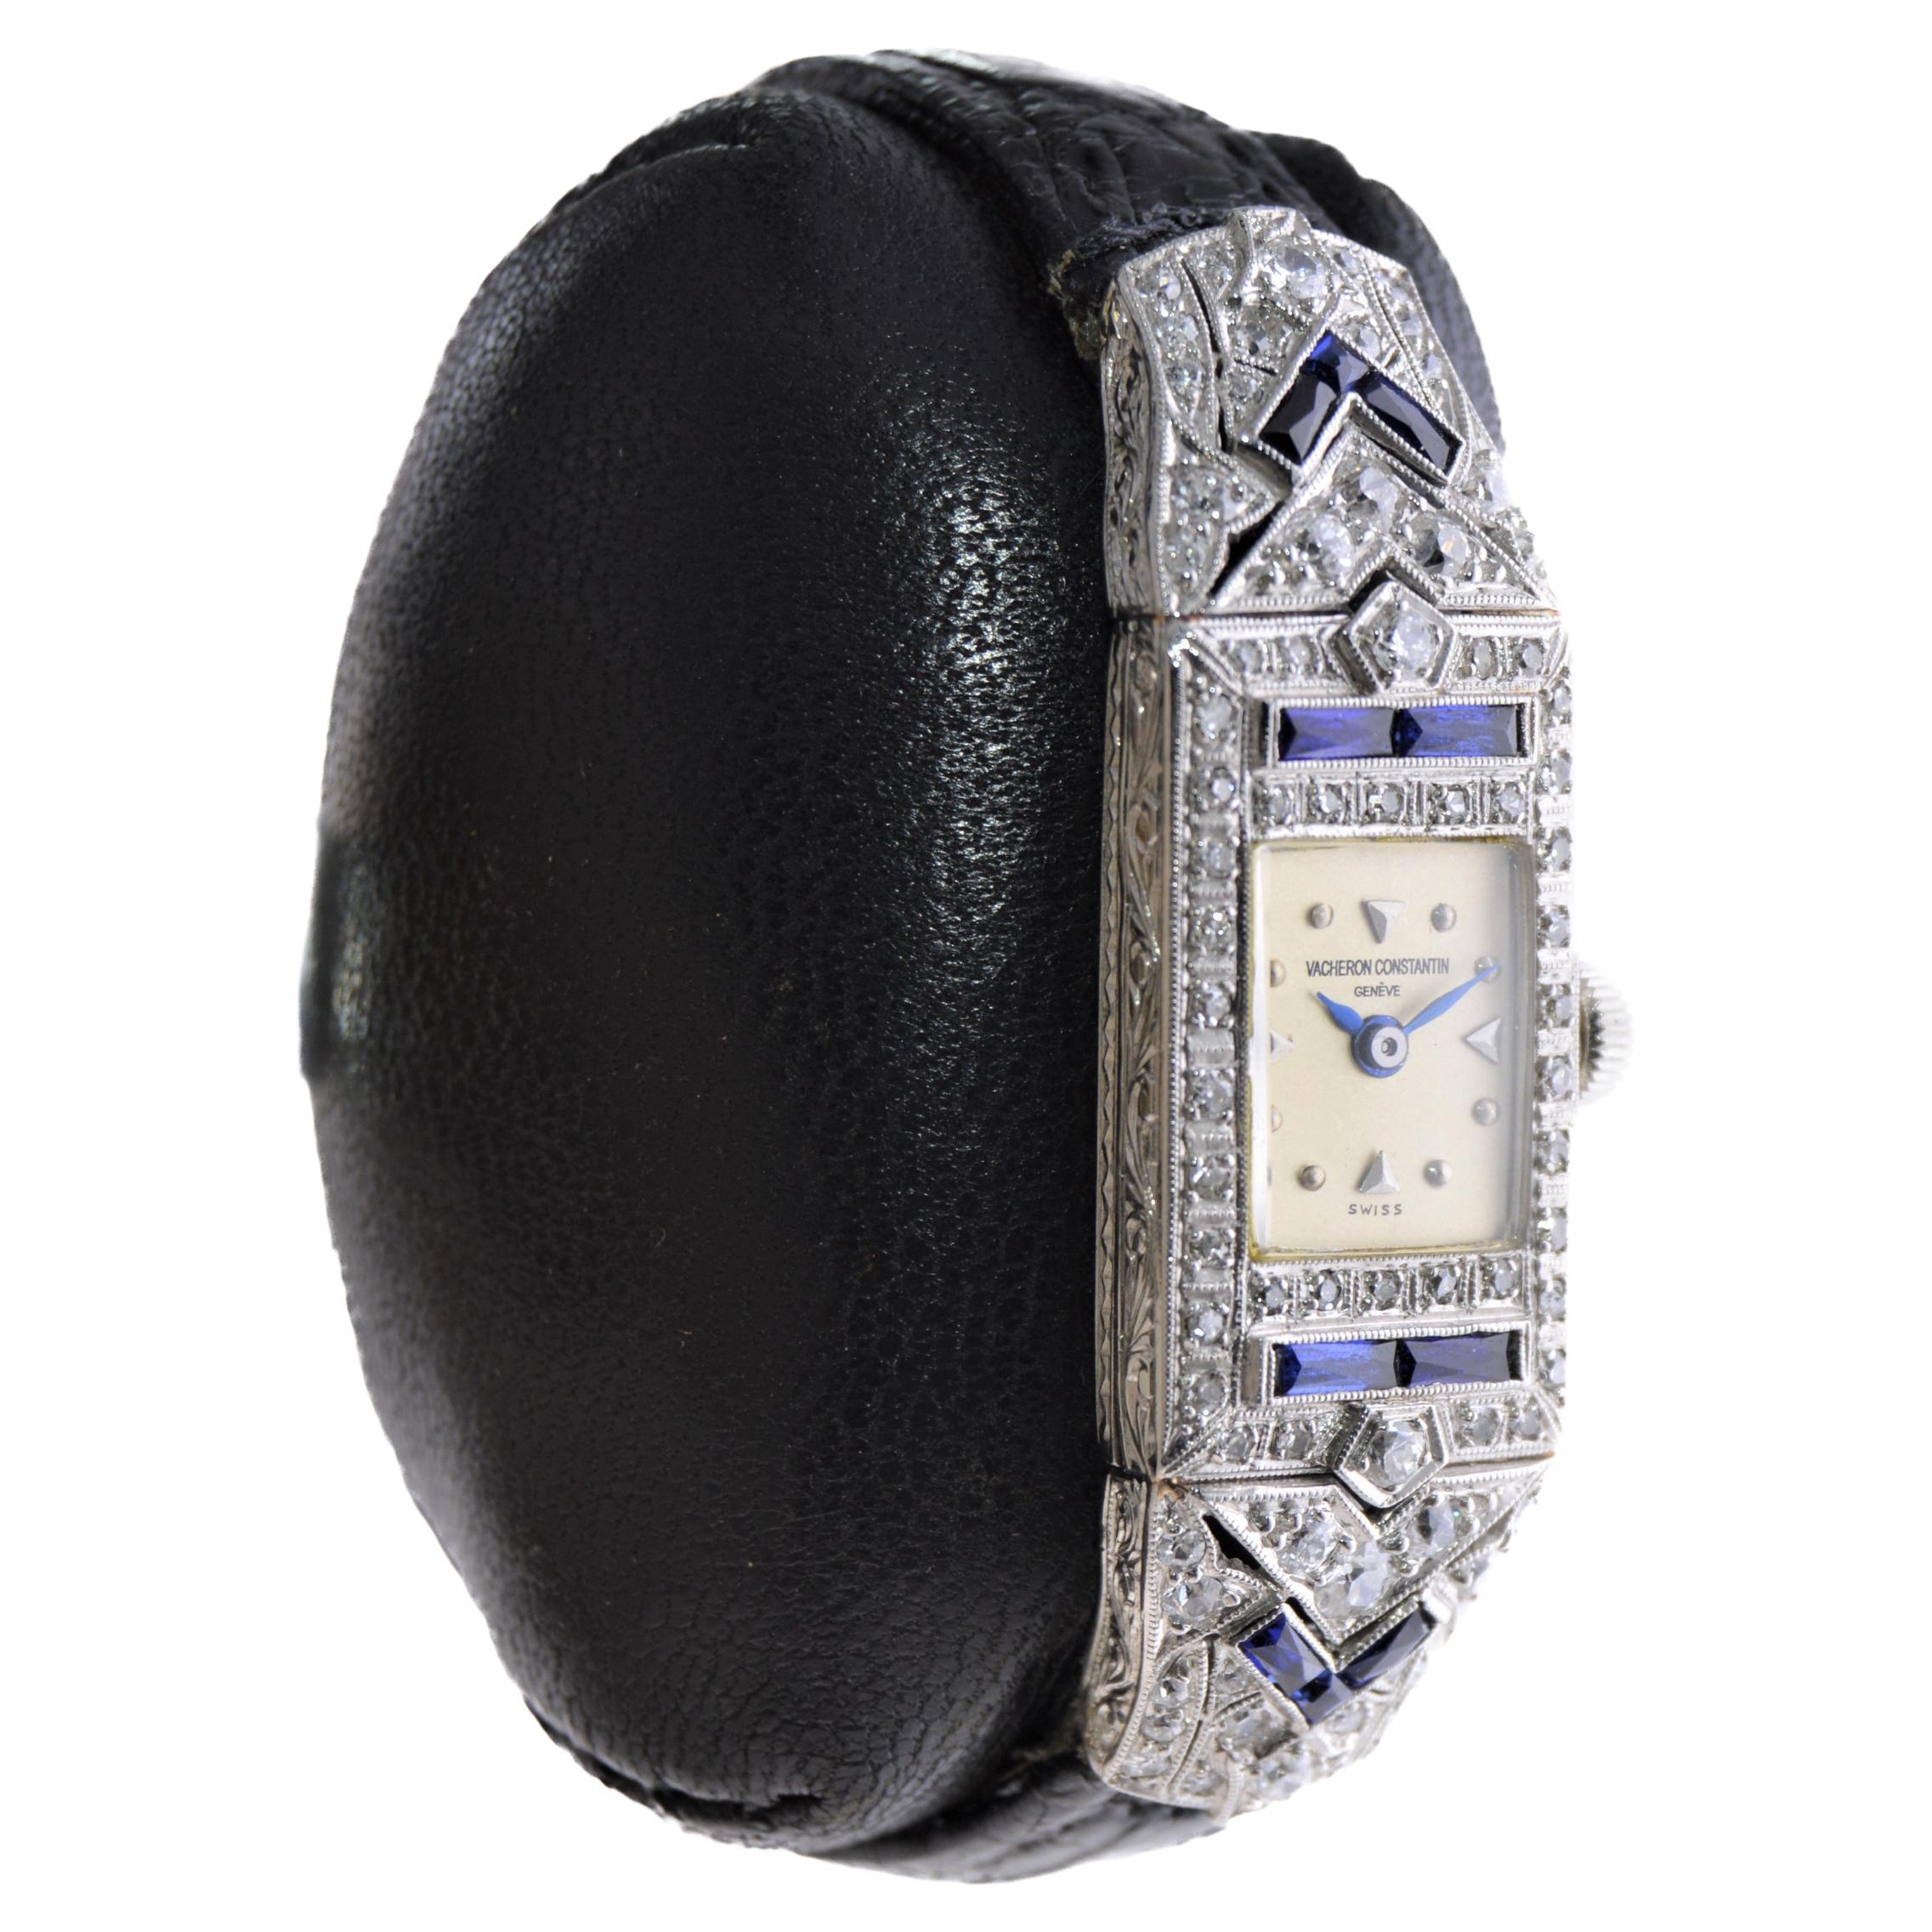 Vacheron Constantin Damen Platin Diamant Saphir Uhr aus den 1920er Jahren (Gemischter Schliff)